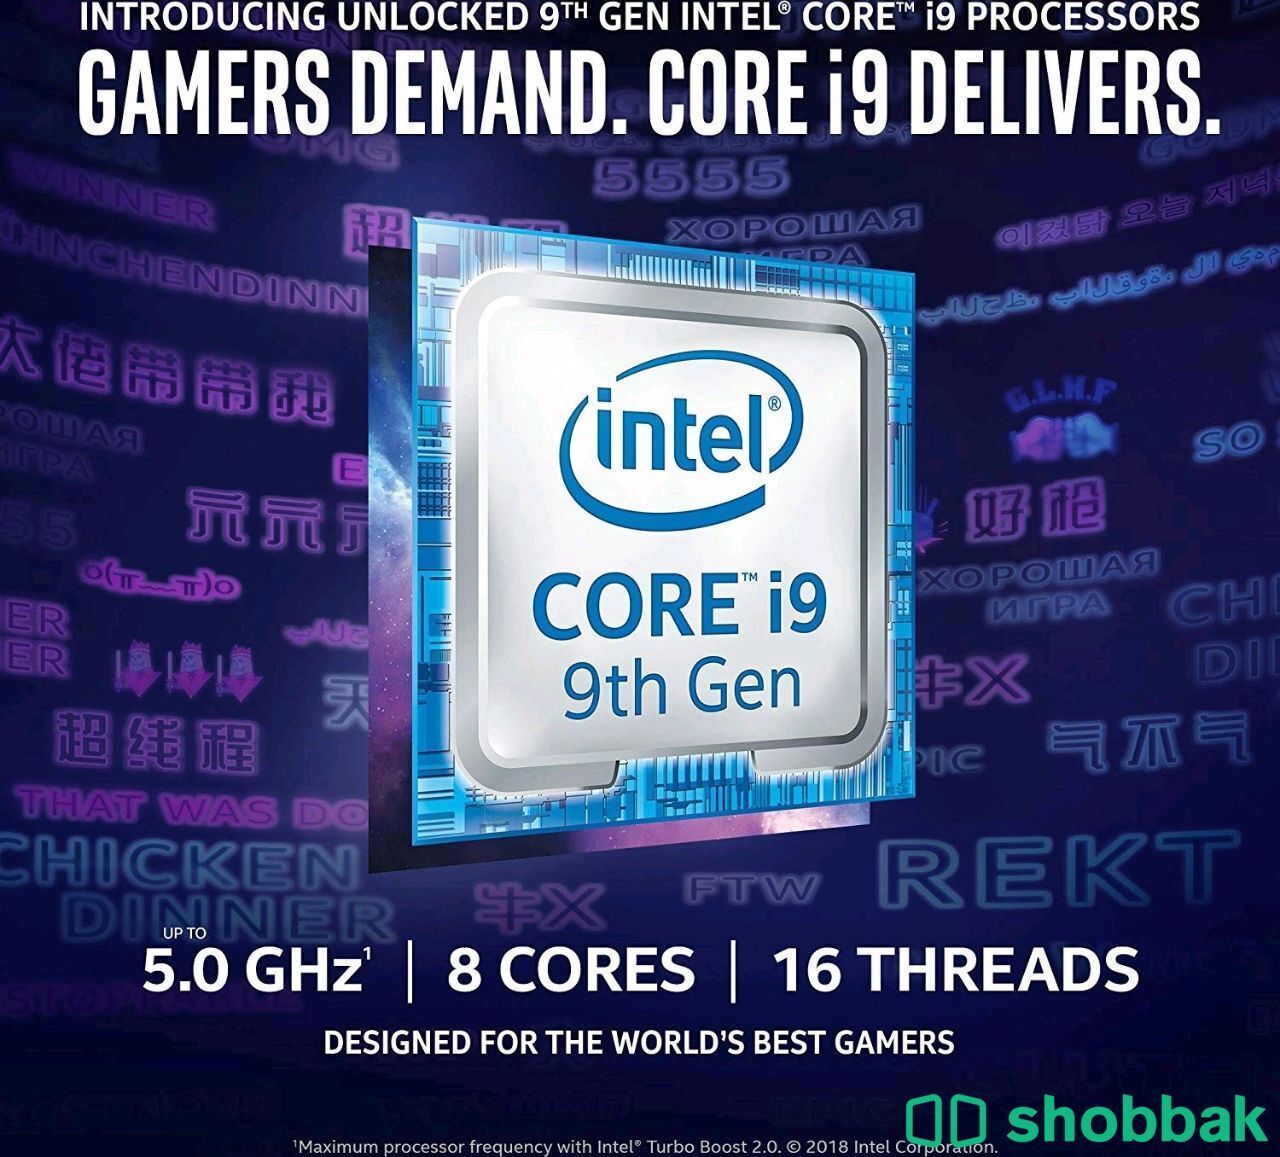 i9 9900k RTX 3060 32gb ram Gaming PC قيمينق بي سي كمبيوتر العاب Shobbak Saudi Arabia